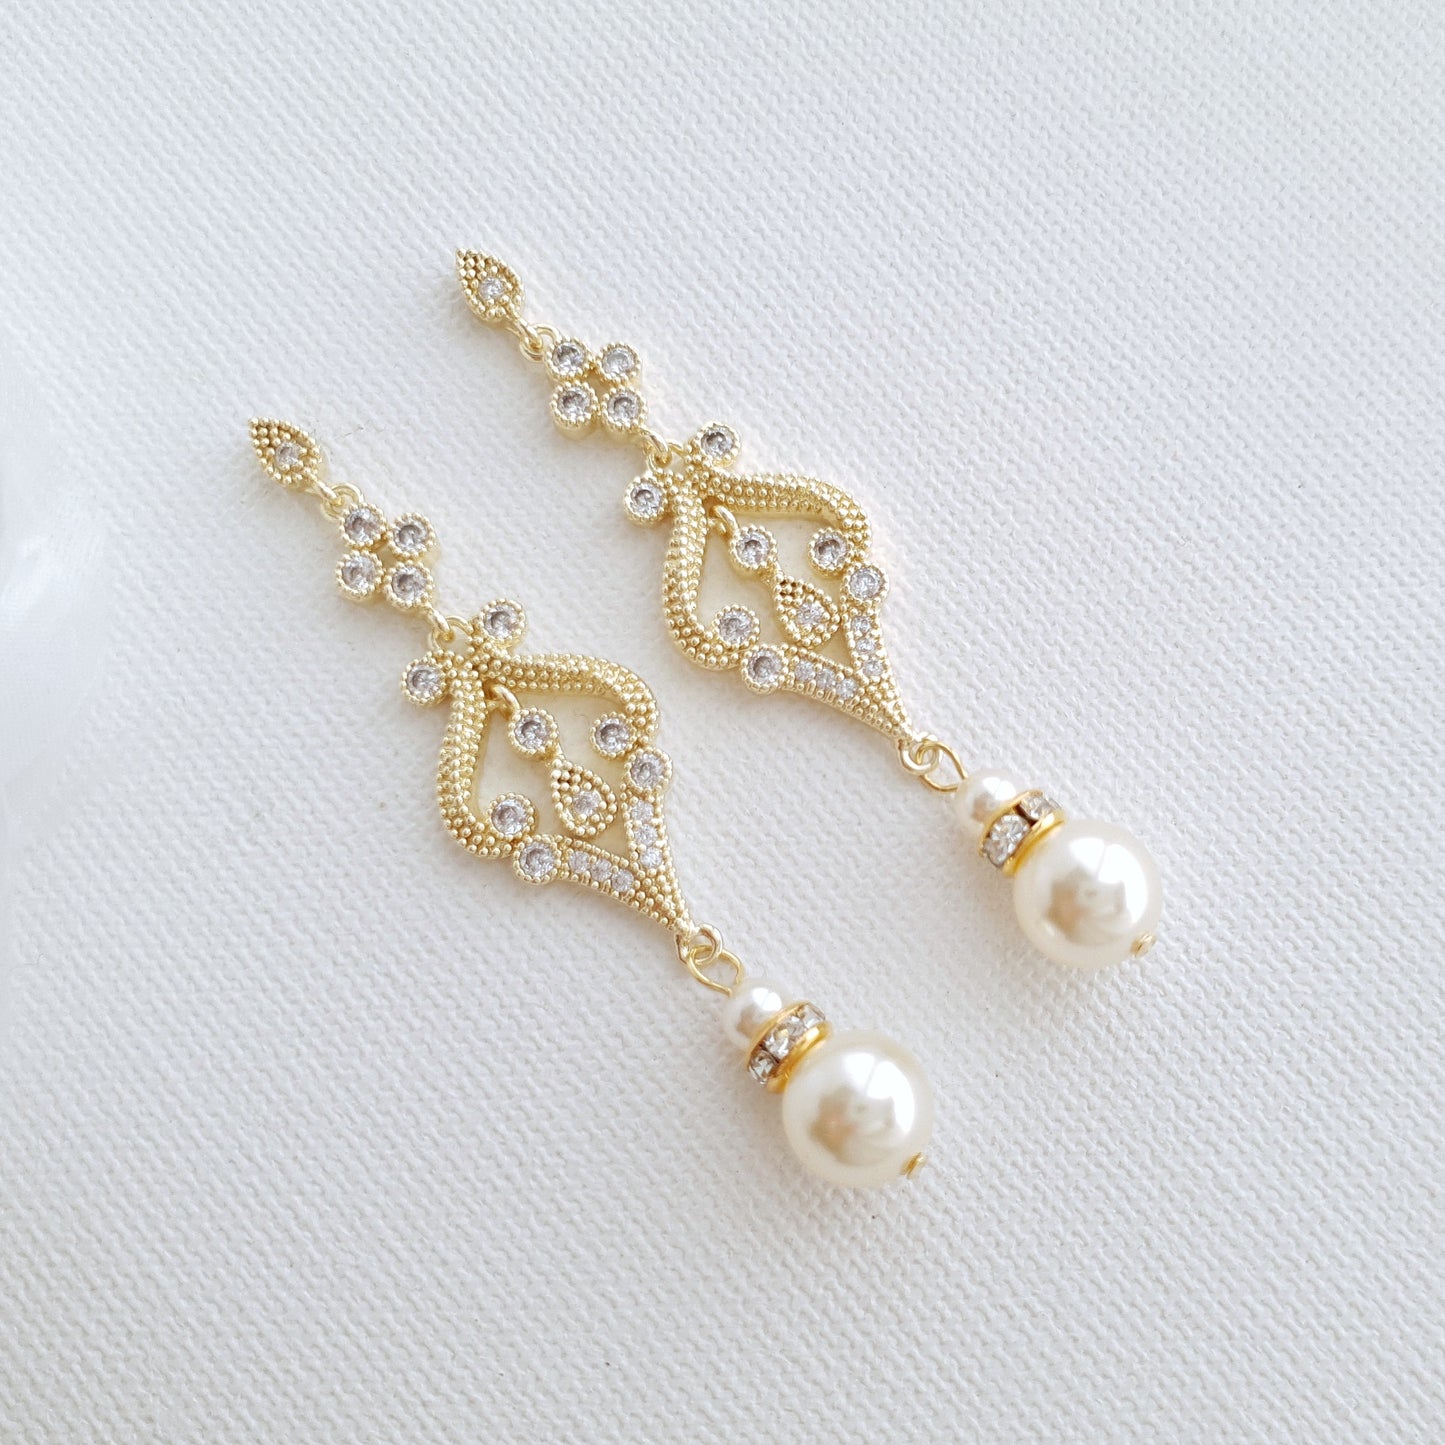 Vintage Pearl Wedding Earrings Gold & Round Pearls